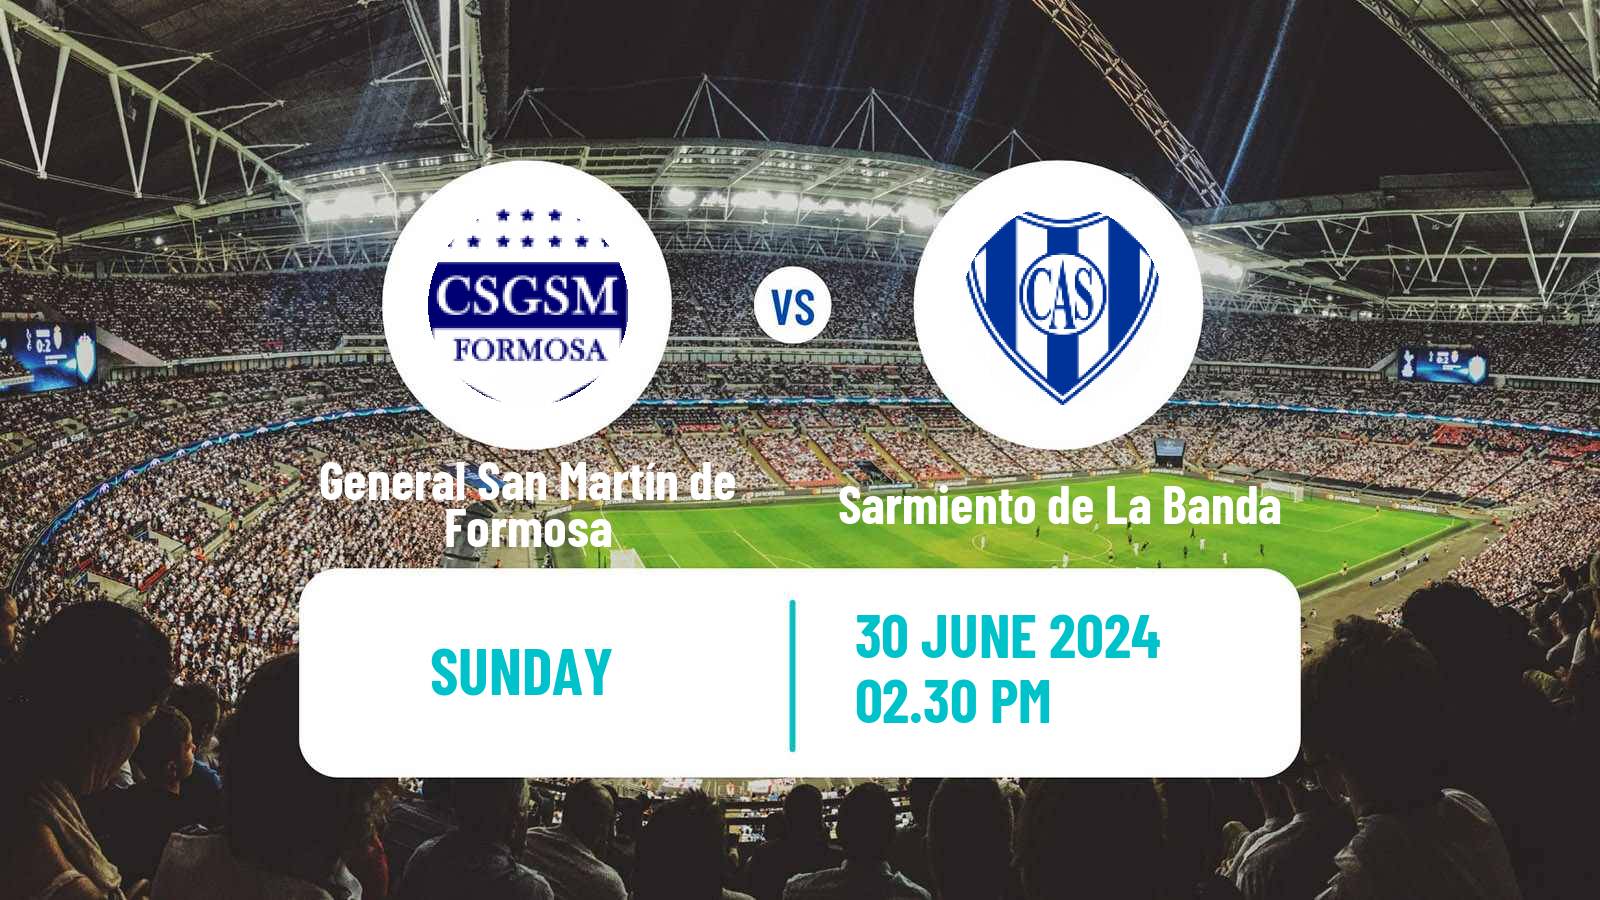 Soccer Argentinian Torneo Federal General San Martín de Formosa - Sarmiento de La Banda